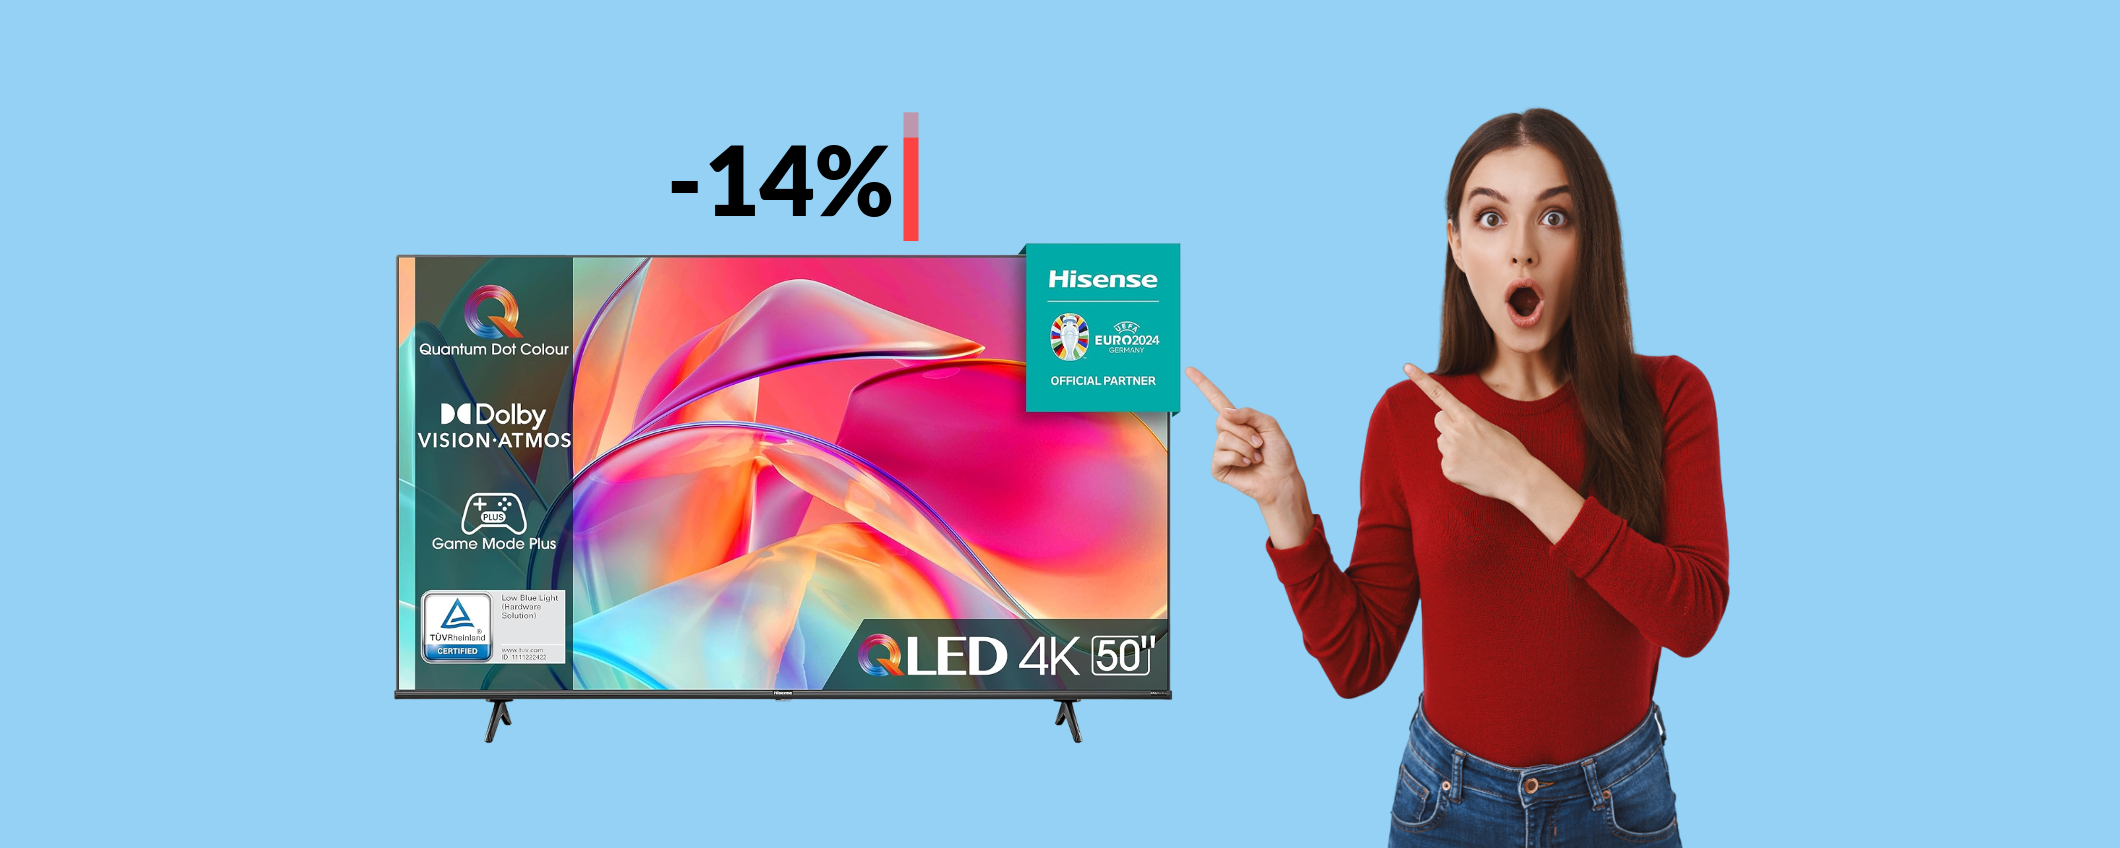 Smart TV 4K 50'' Hisense: oggi è tua ad un prezzo BOMBA (369€)